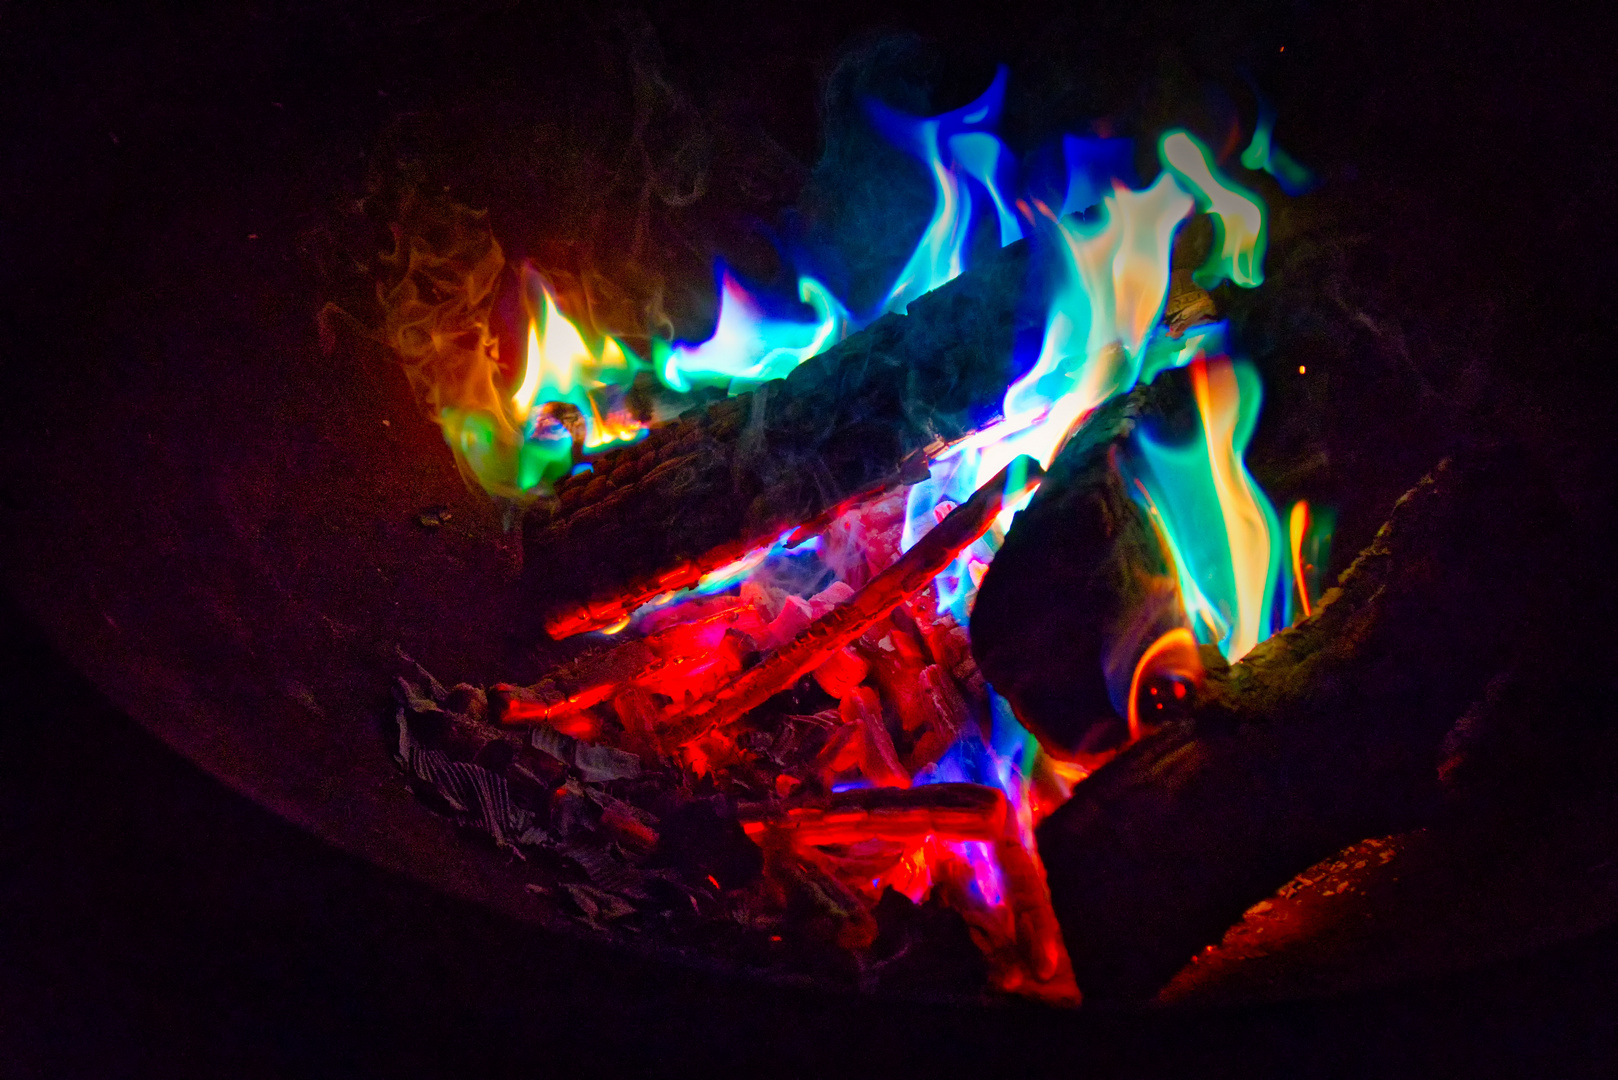 Magic Fire